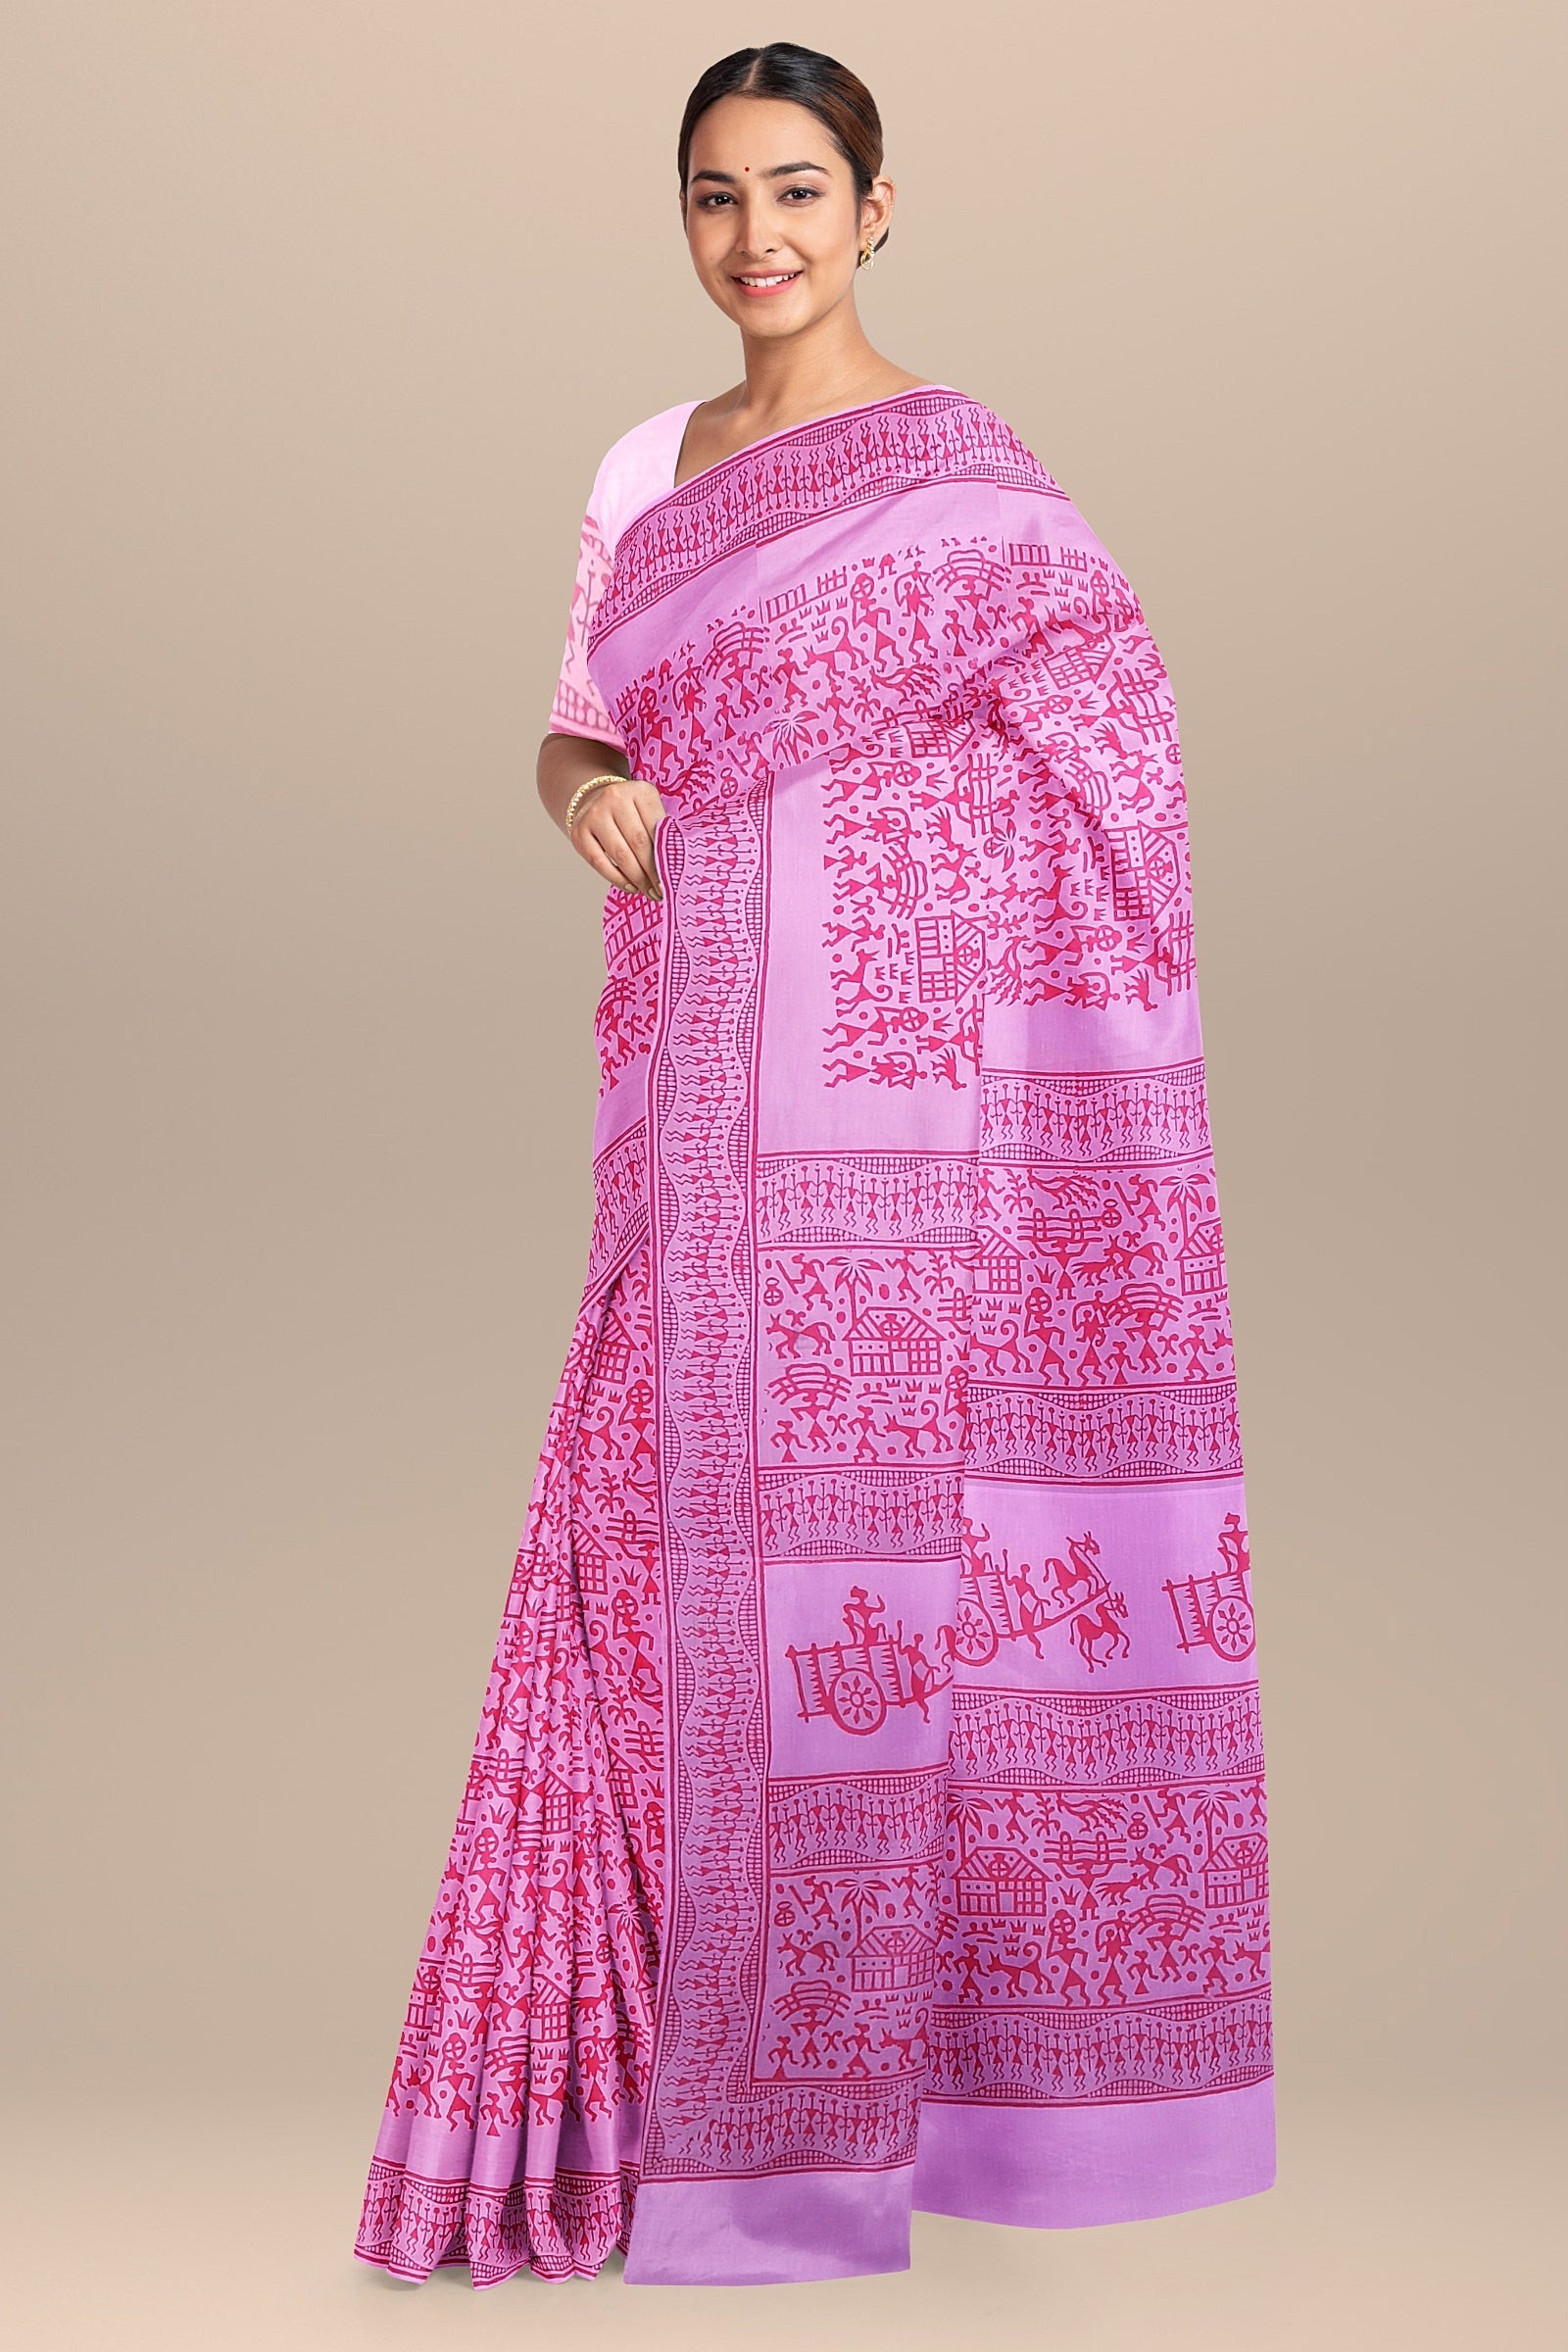 Chhipa Hand Block Printed Baby Pink Color Malmal Cotton Saree With Red Warli Motif SKU-7014 - Bhartiya Shilp